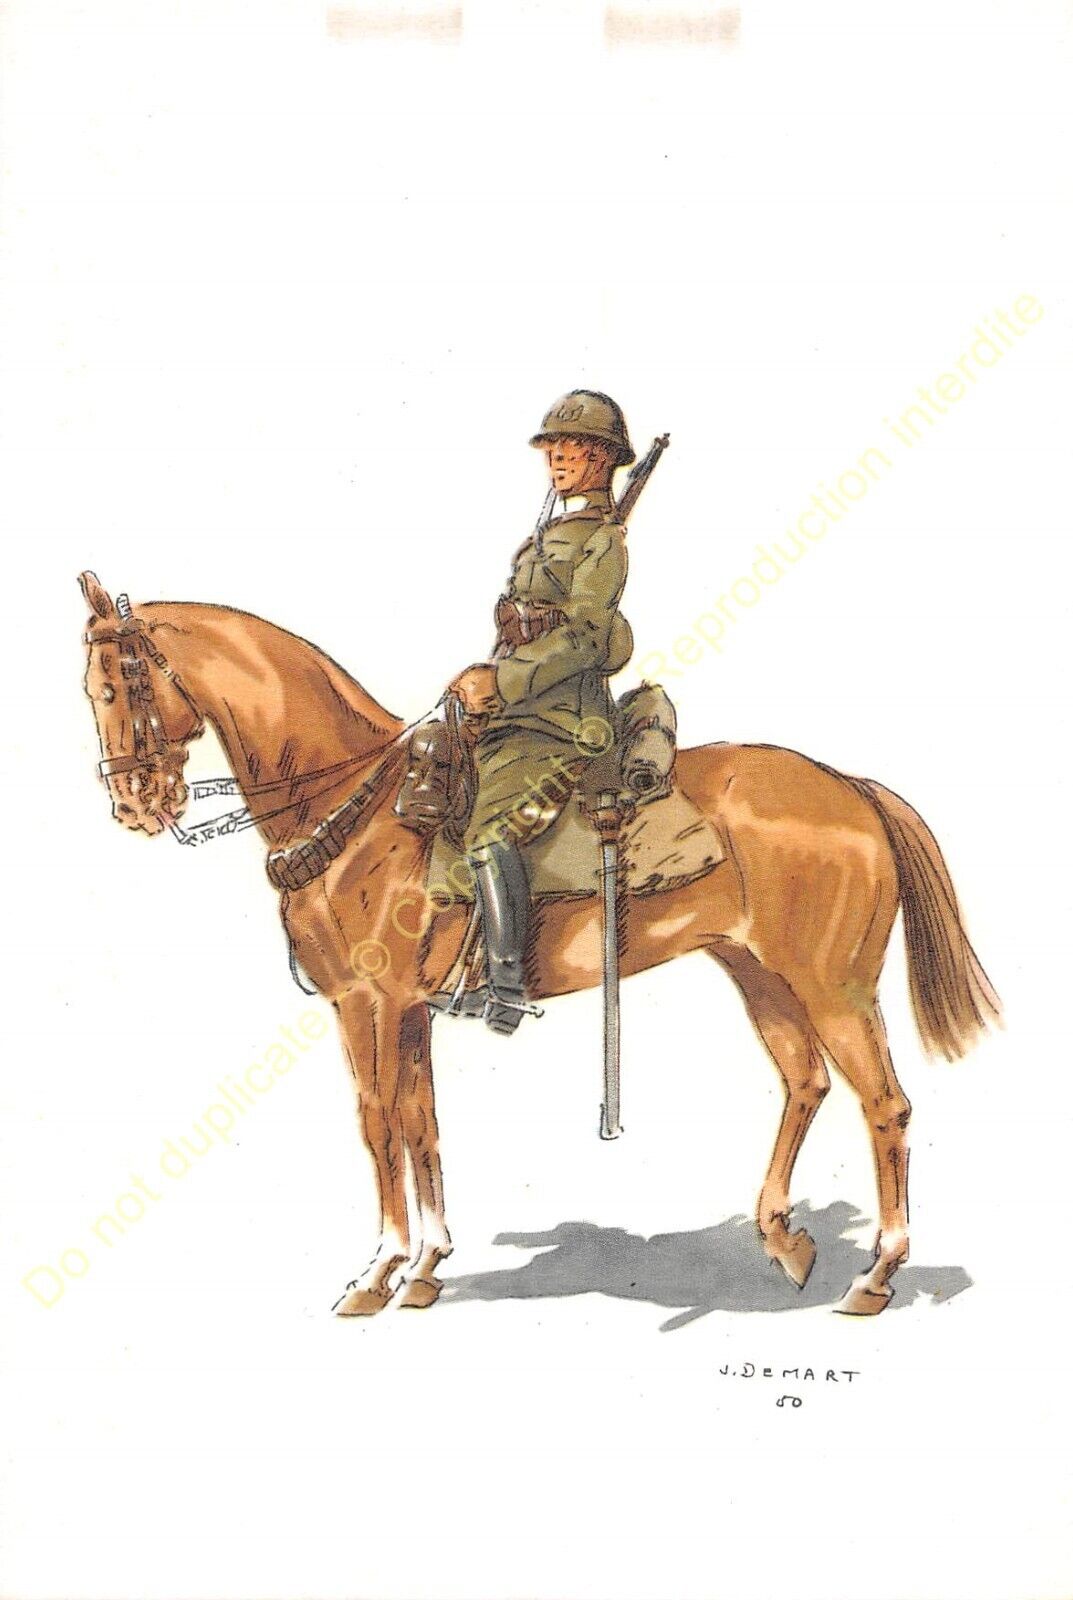 ILLUSTRATION J. DEMART MILITARIA 2nd LANCIERS SOLDIER BELGE 1918